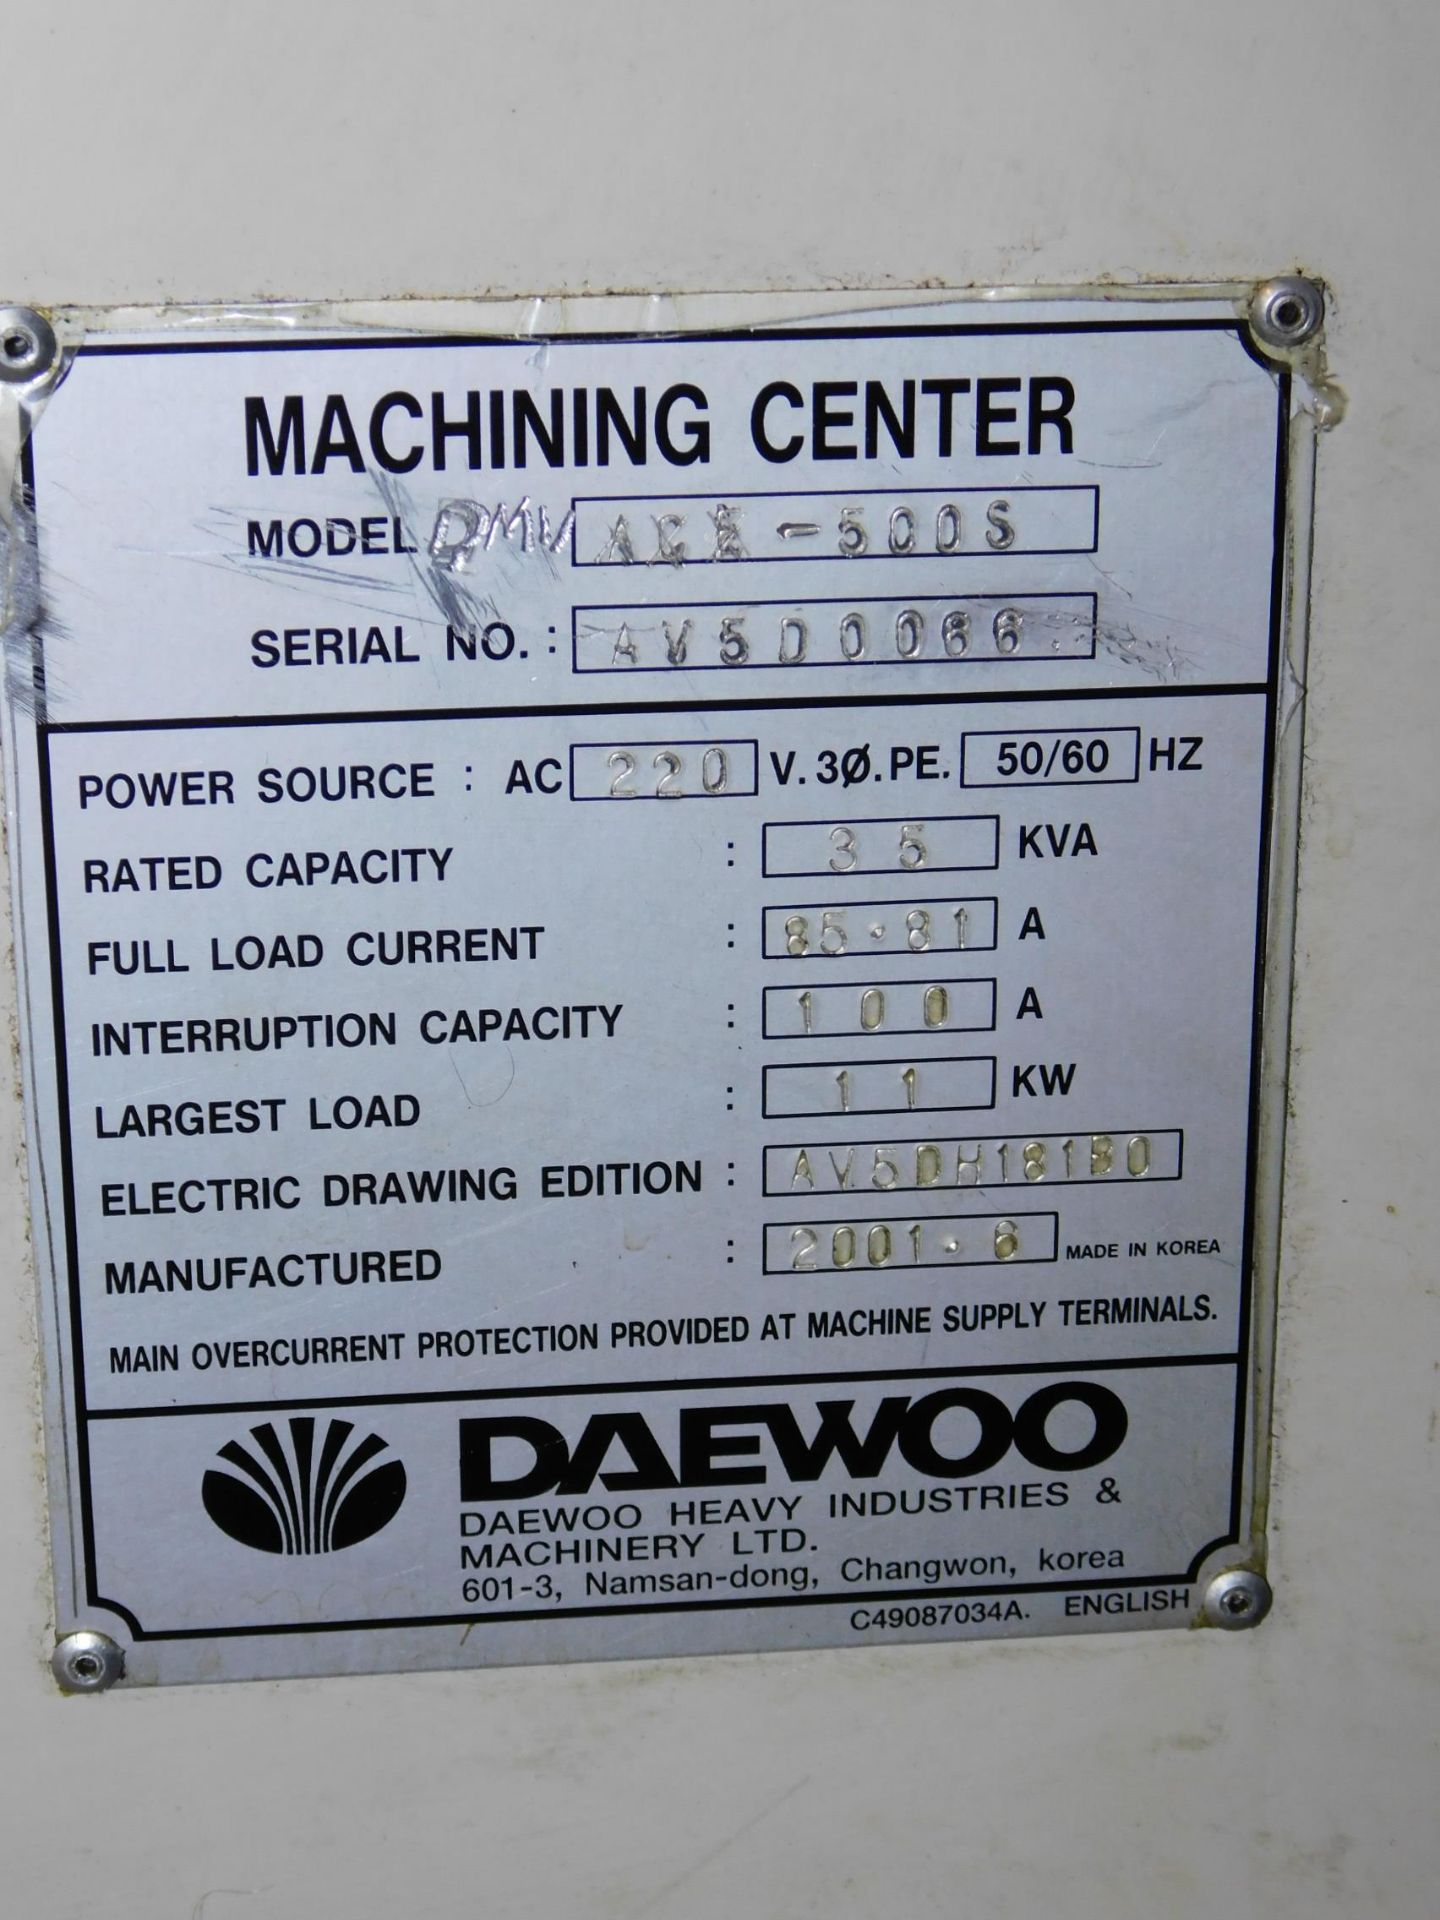 Daewoo Model DMV-500S CNC Vertical Machining Center, s/n AV5D-0066, New 2001, Fanuc 18i-M CNC - Image 10 of 10